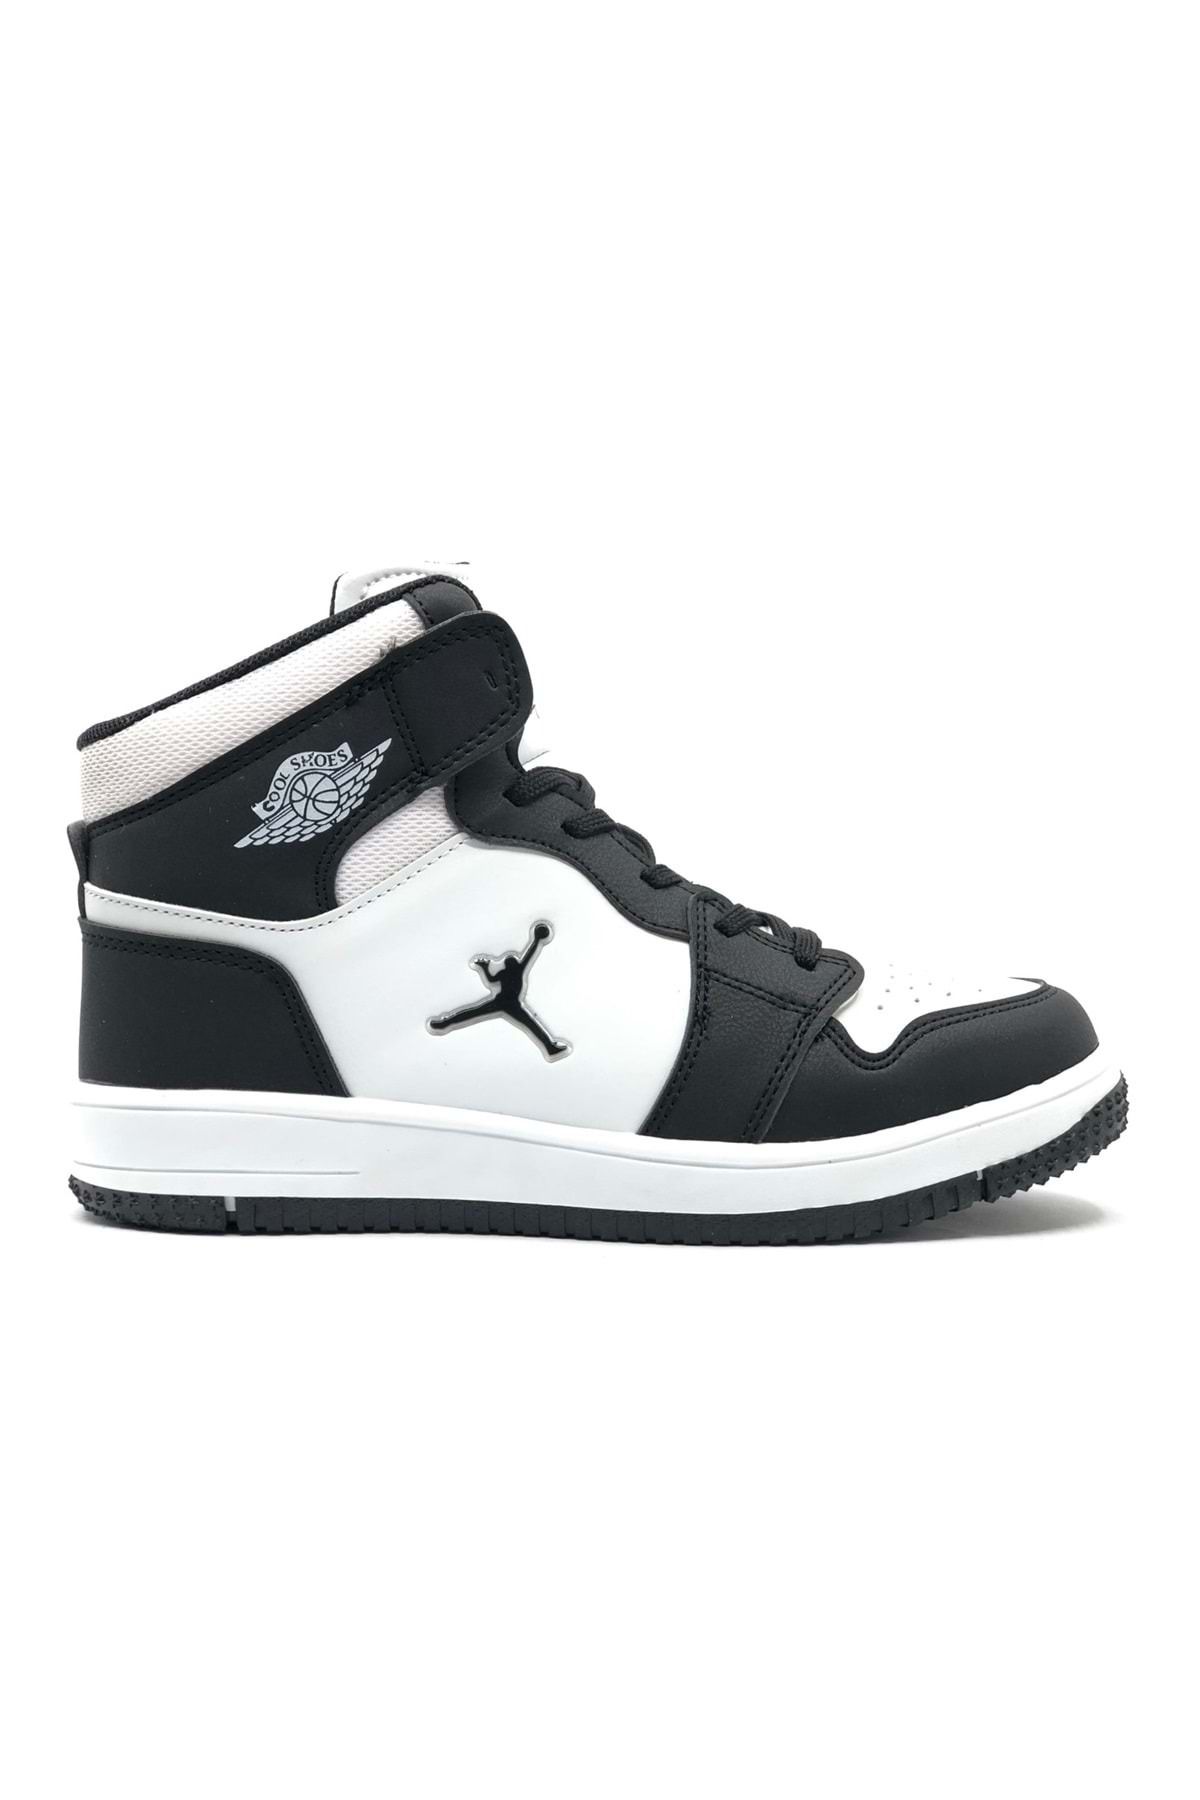 Kids Club Shoes Cool Jordan Glaxy Uzun Pekin Boğazlı Çocuk Spor Ayakkabı Siyah-beyaz